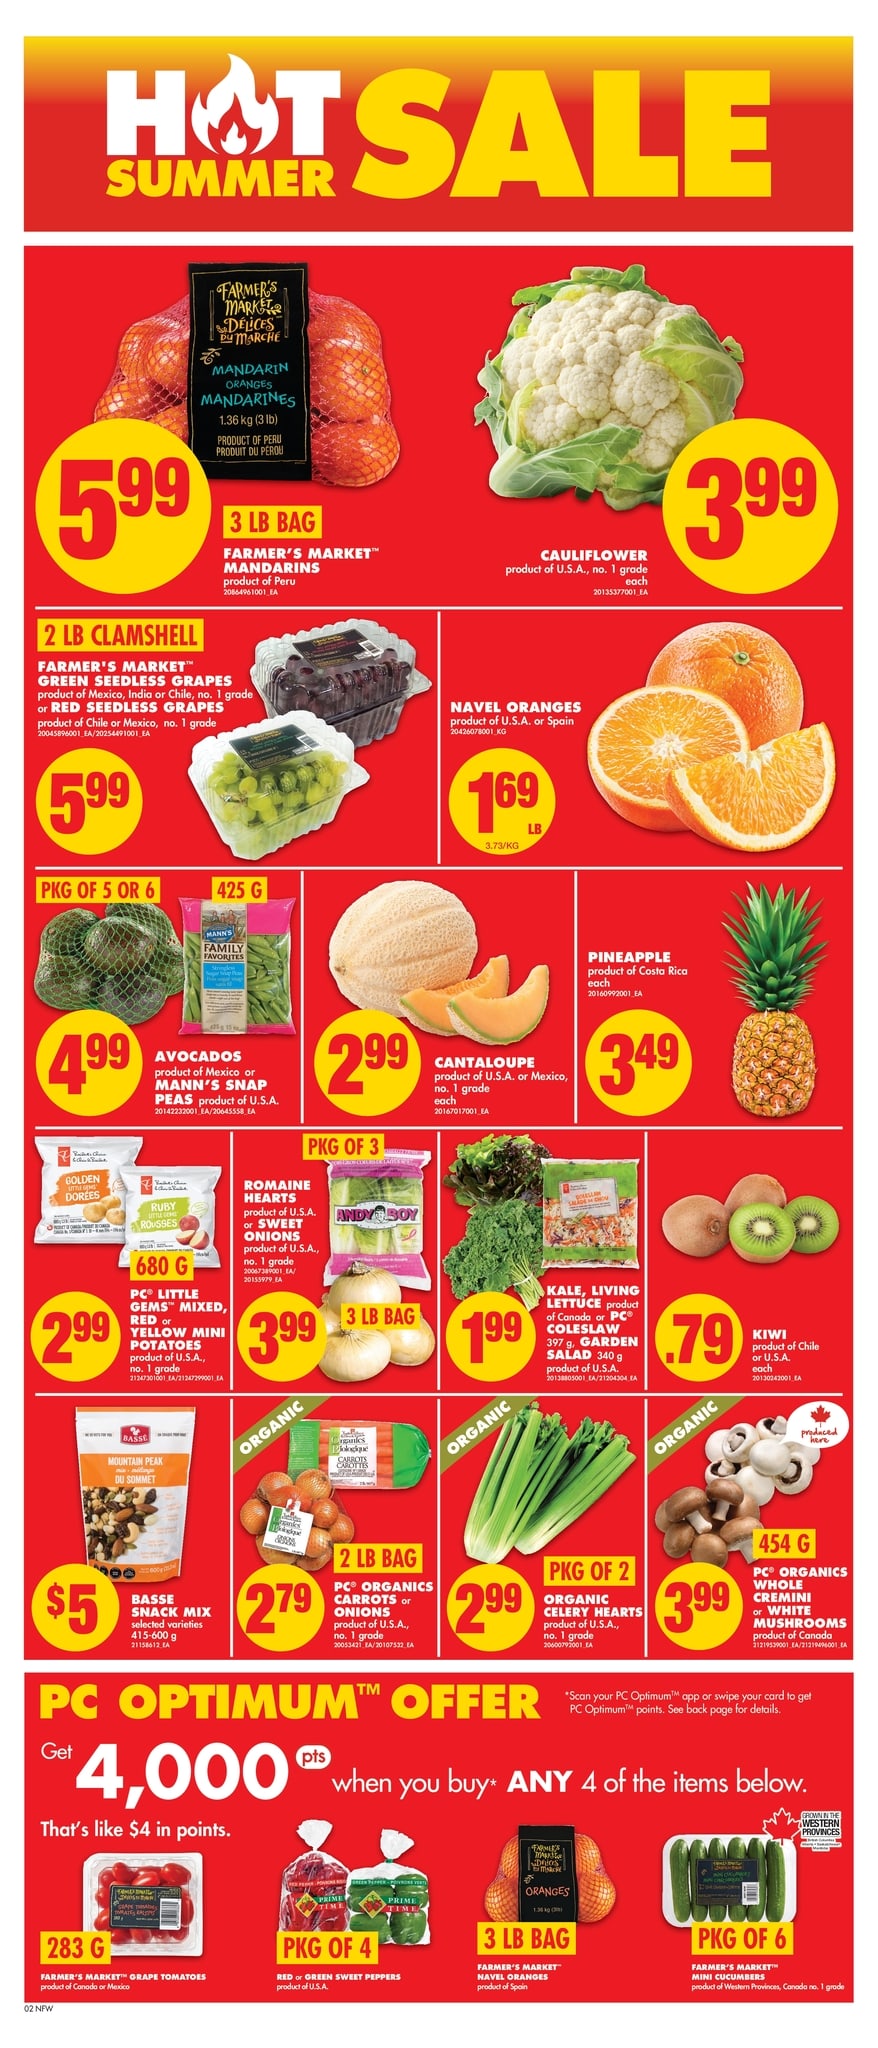 No Frills (Western Canada, Northern Ontario) - Weekly Flyer Specials - Page 3